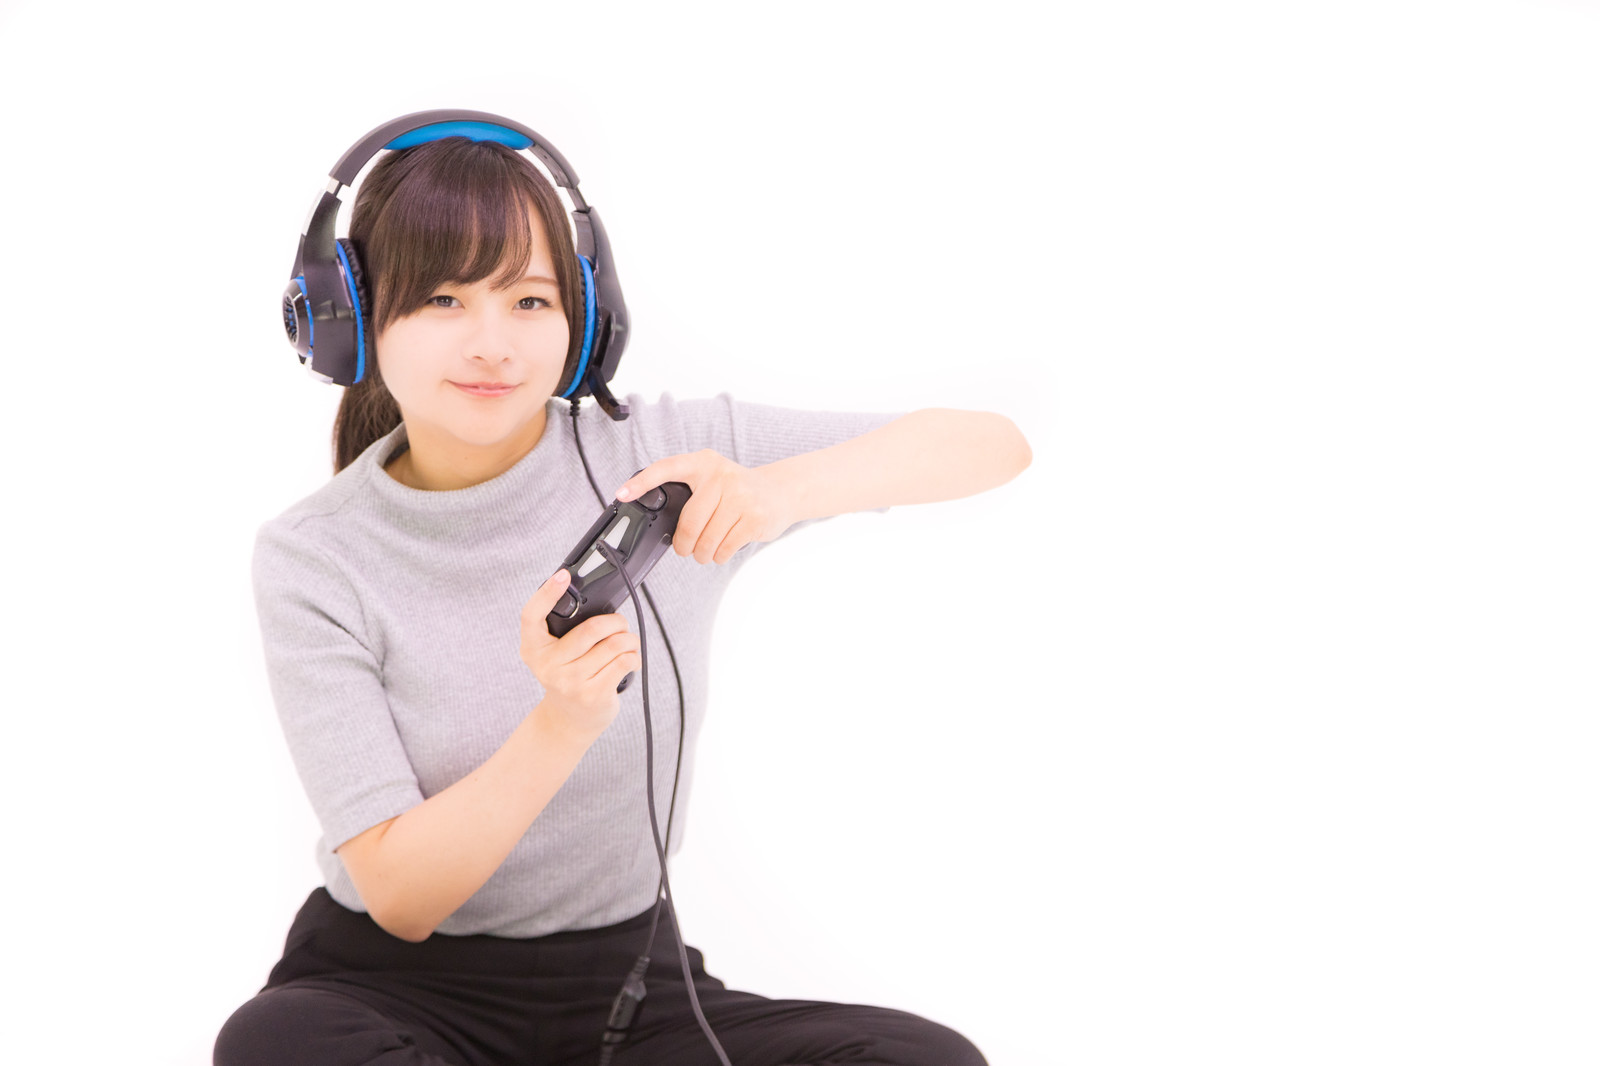 ゲーム用のヘッドフォンをして本格的にオンラインゲームを楽しんでいる可愛い女の子のイメージ画像